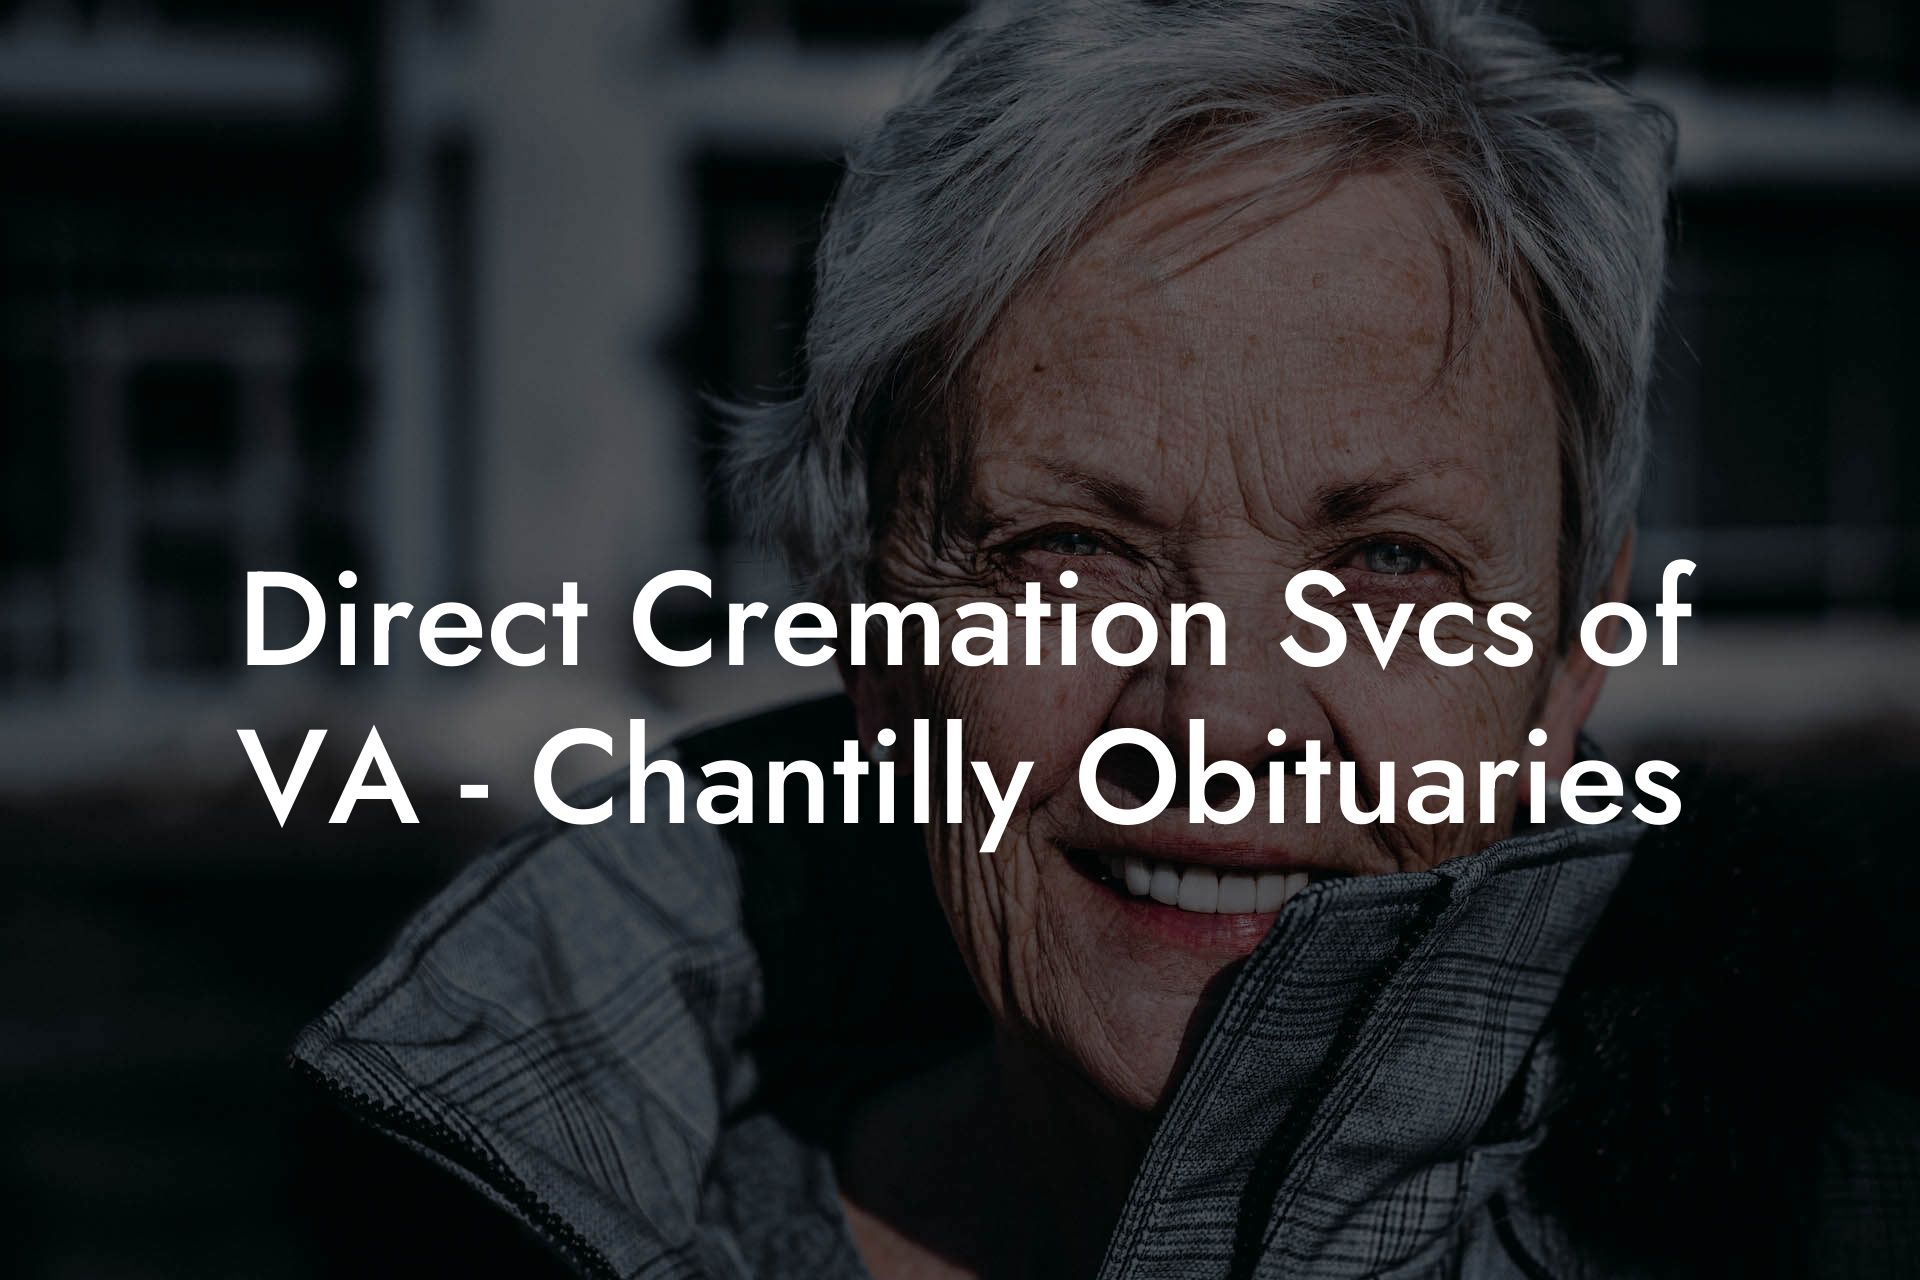 Direct Cremation Svcs of VA - Chantilly Obituaries